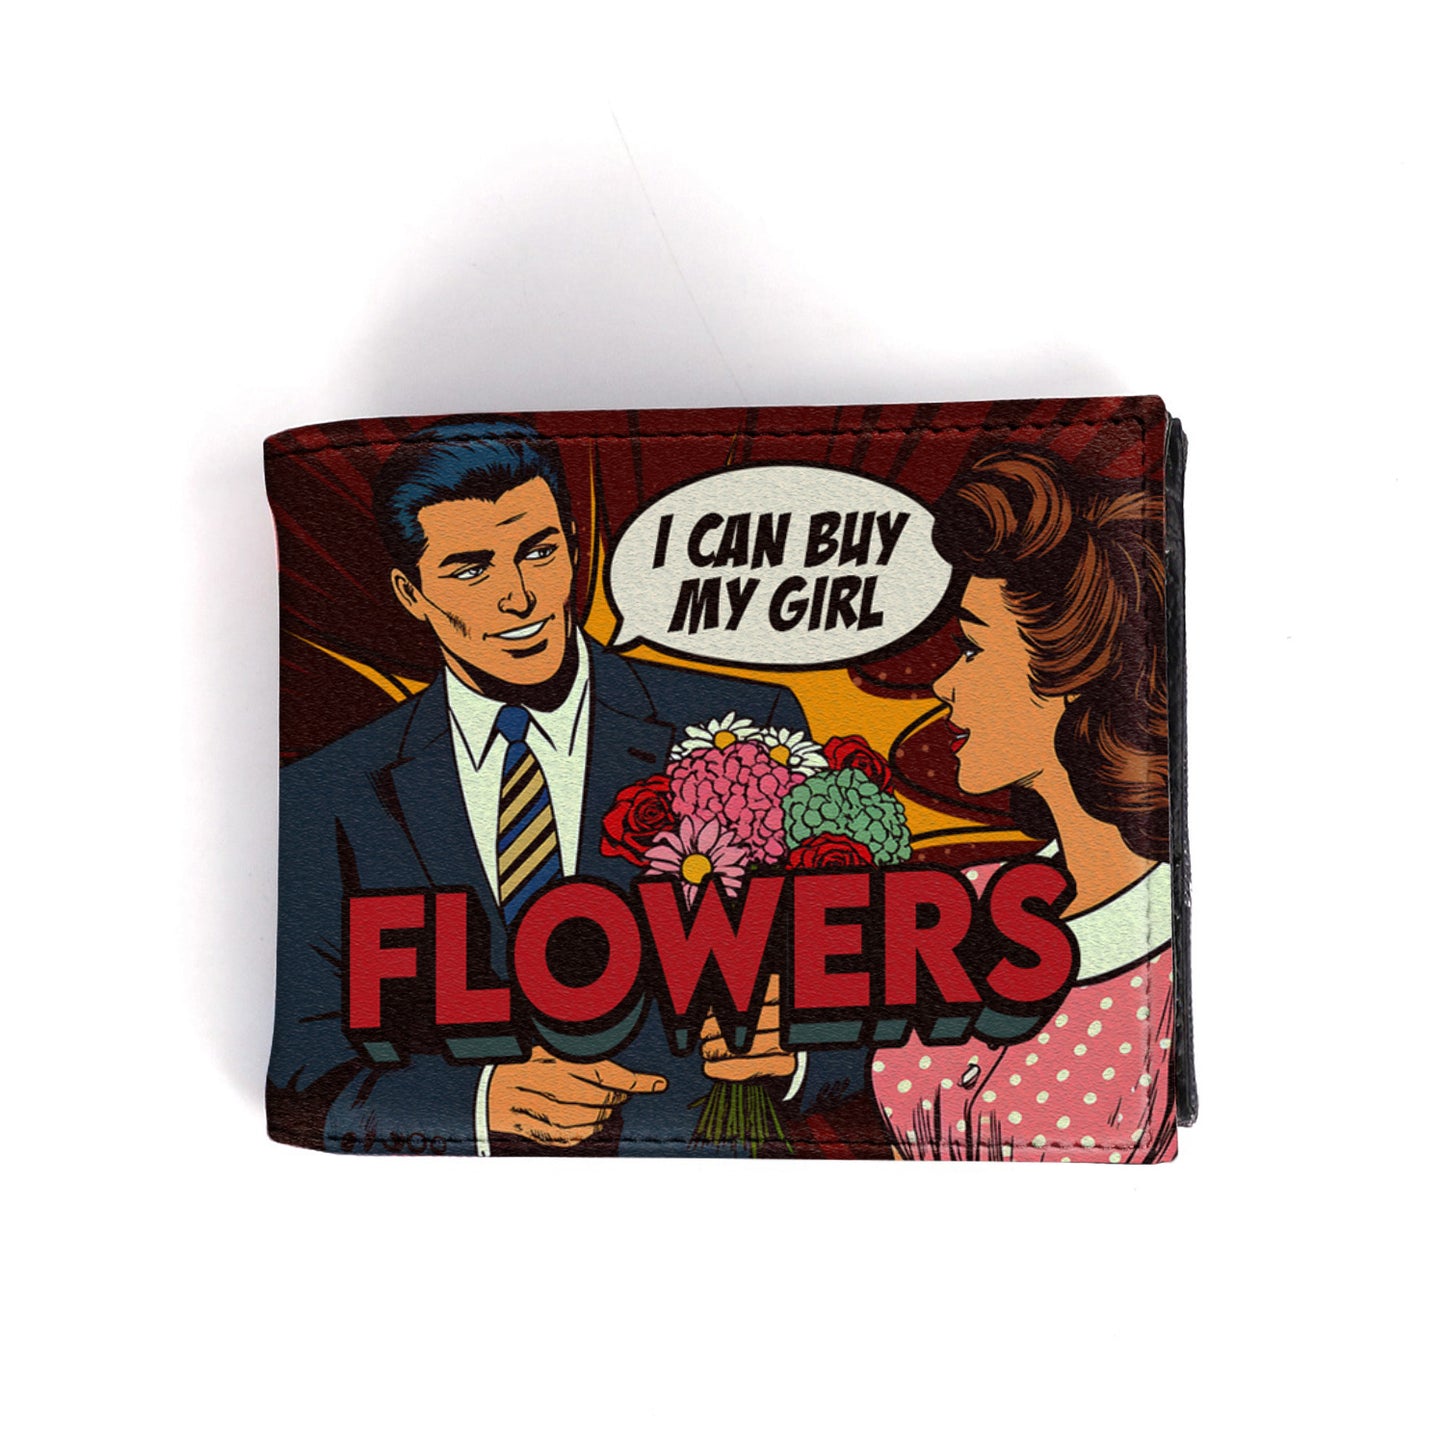 Puedo comprar flores a mi chica - Cartera de piel para hombre - MW02